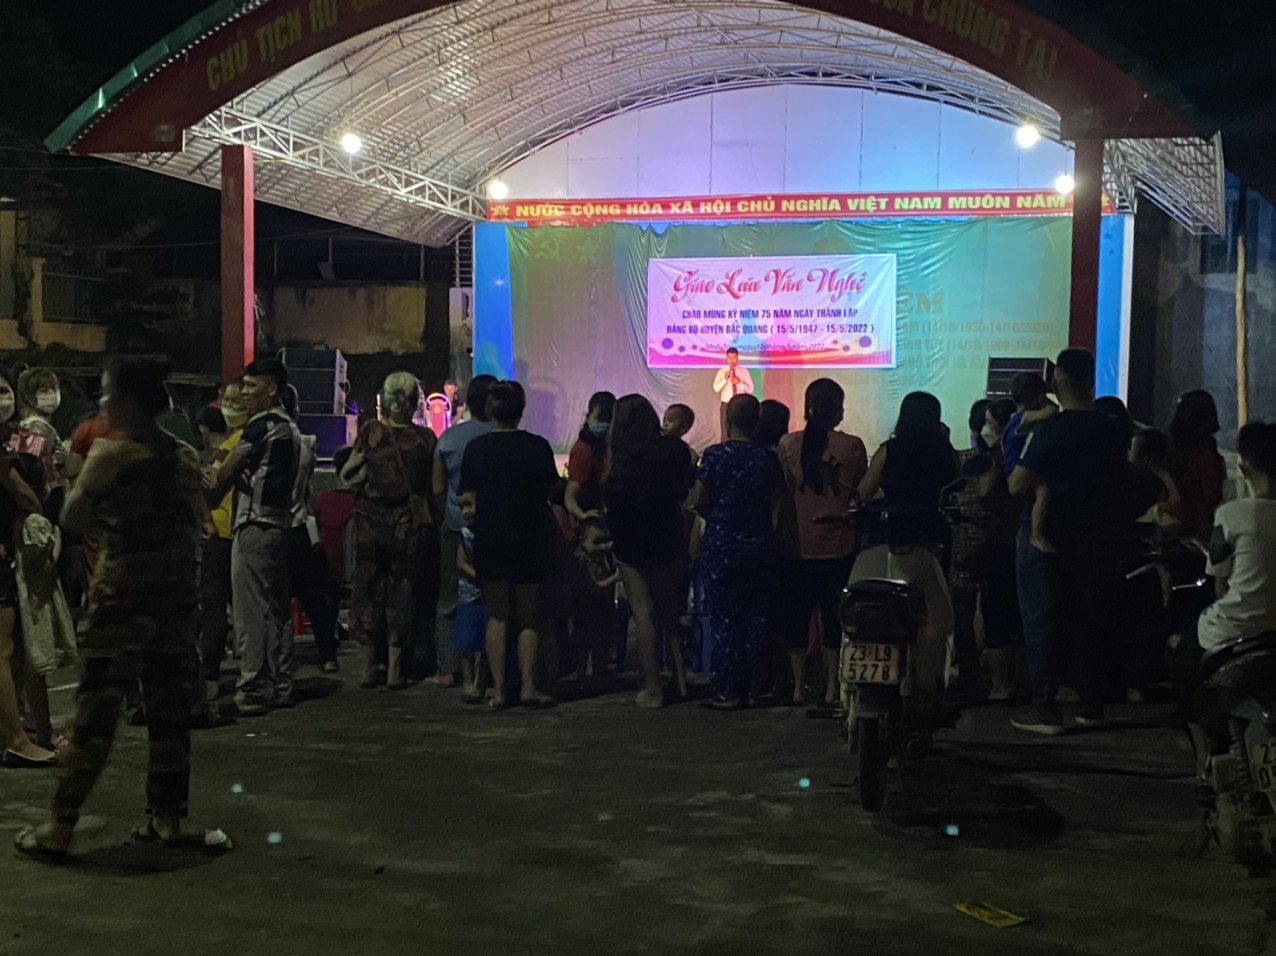 Tối ngày 12/5/2022 thị trấn Vĩnh Tuy tổ chức đêm giao lưu văn nghệ chào mừng kỷ niệm 132 năm ngày sinh Chủ tịch Hồ Chí Minh và kỷ niệm 75 năm ngày thành lập Đảng bộ huyện Bắc Quang (15/5/1947-15/5/2022)